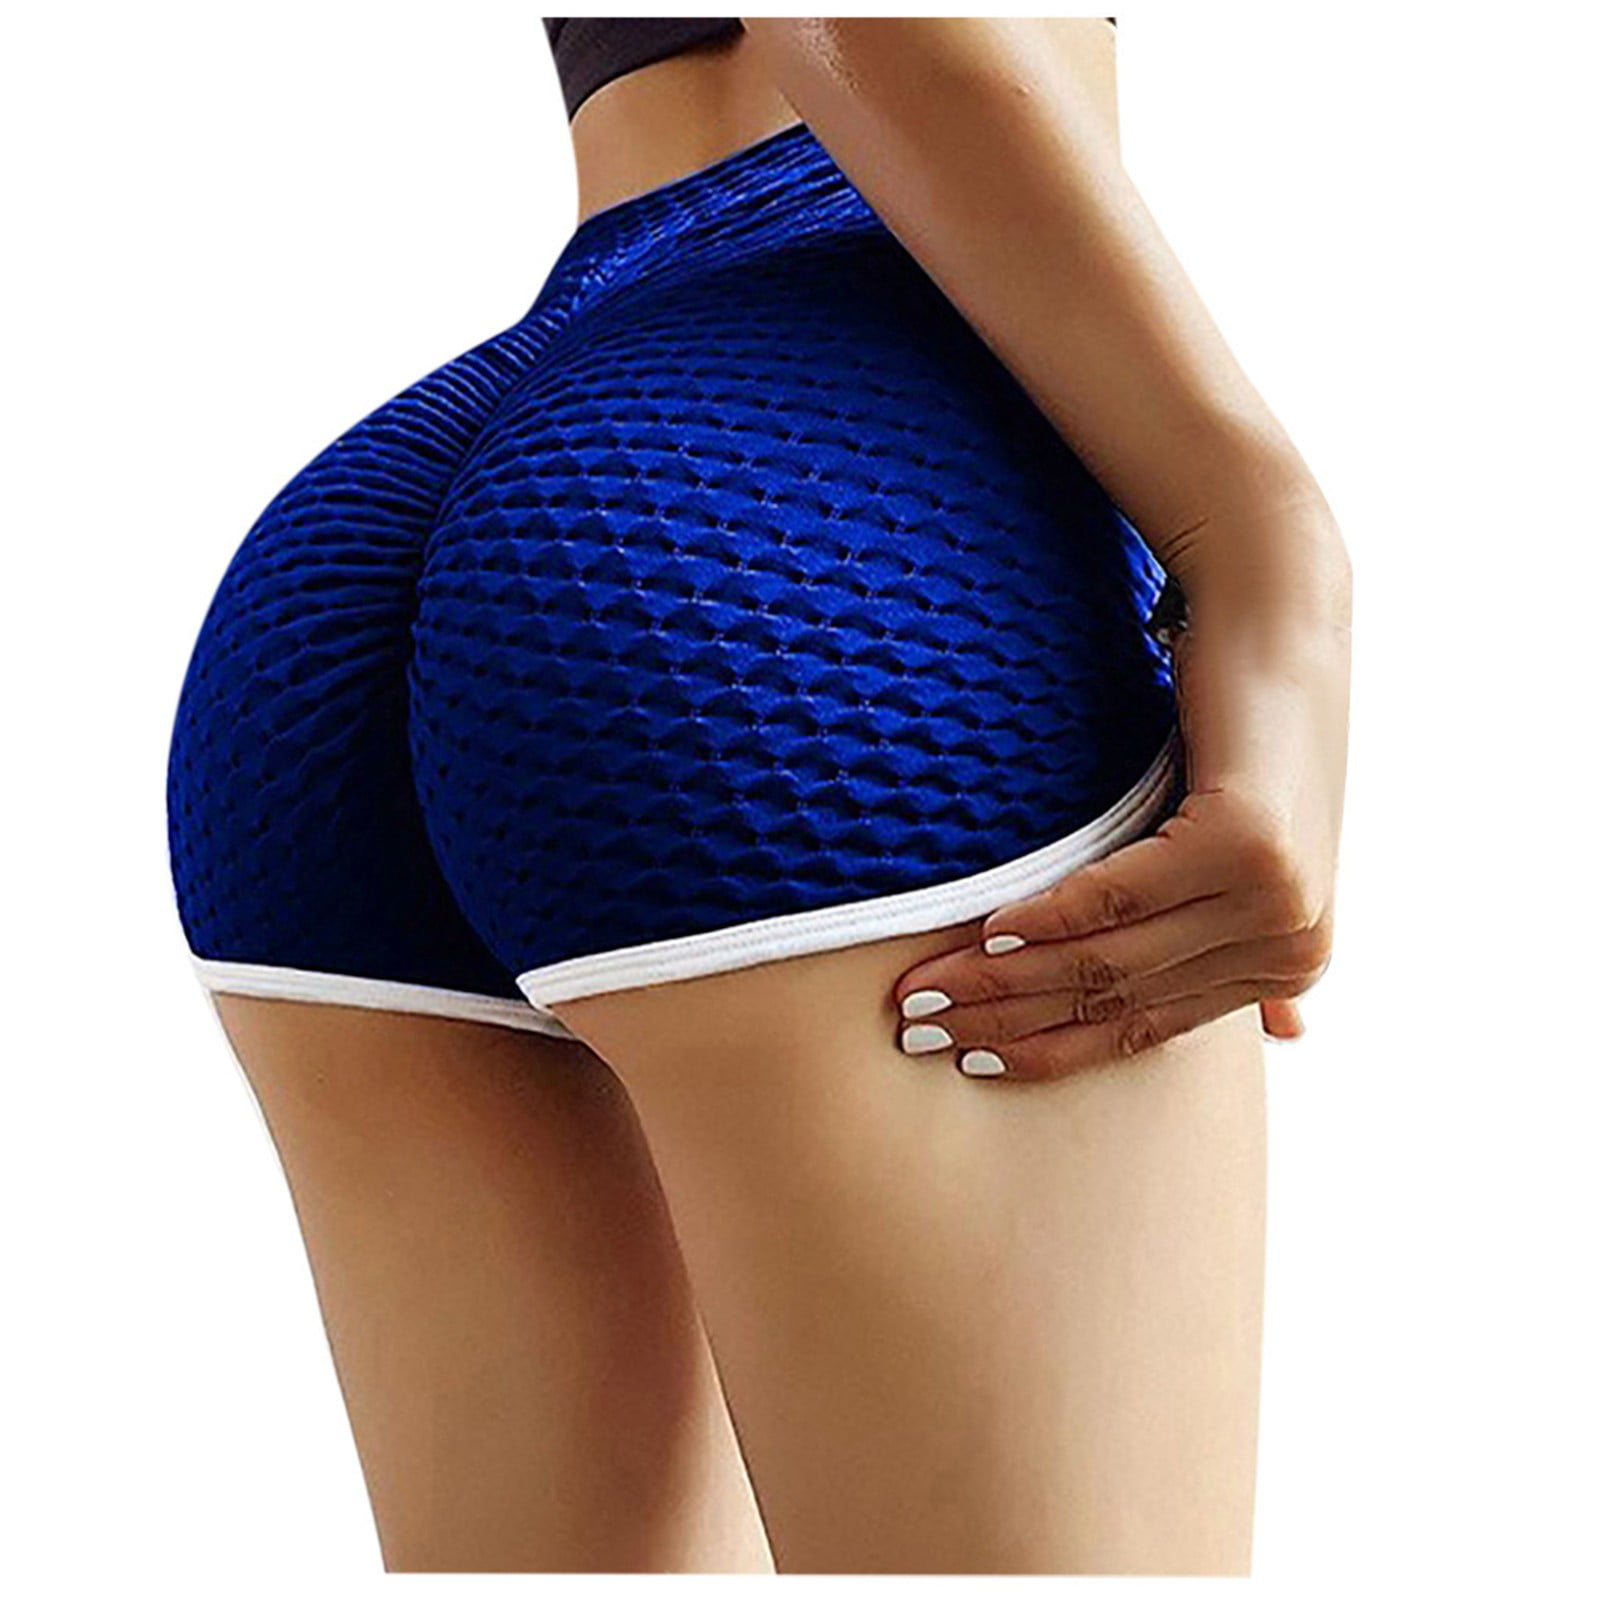 KINPLE Capri Leggings for Women - High Waisted Capris Soft Tummy